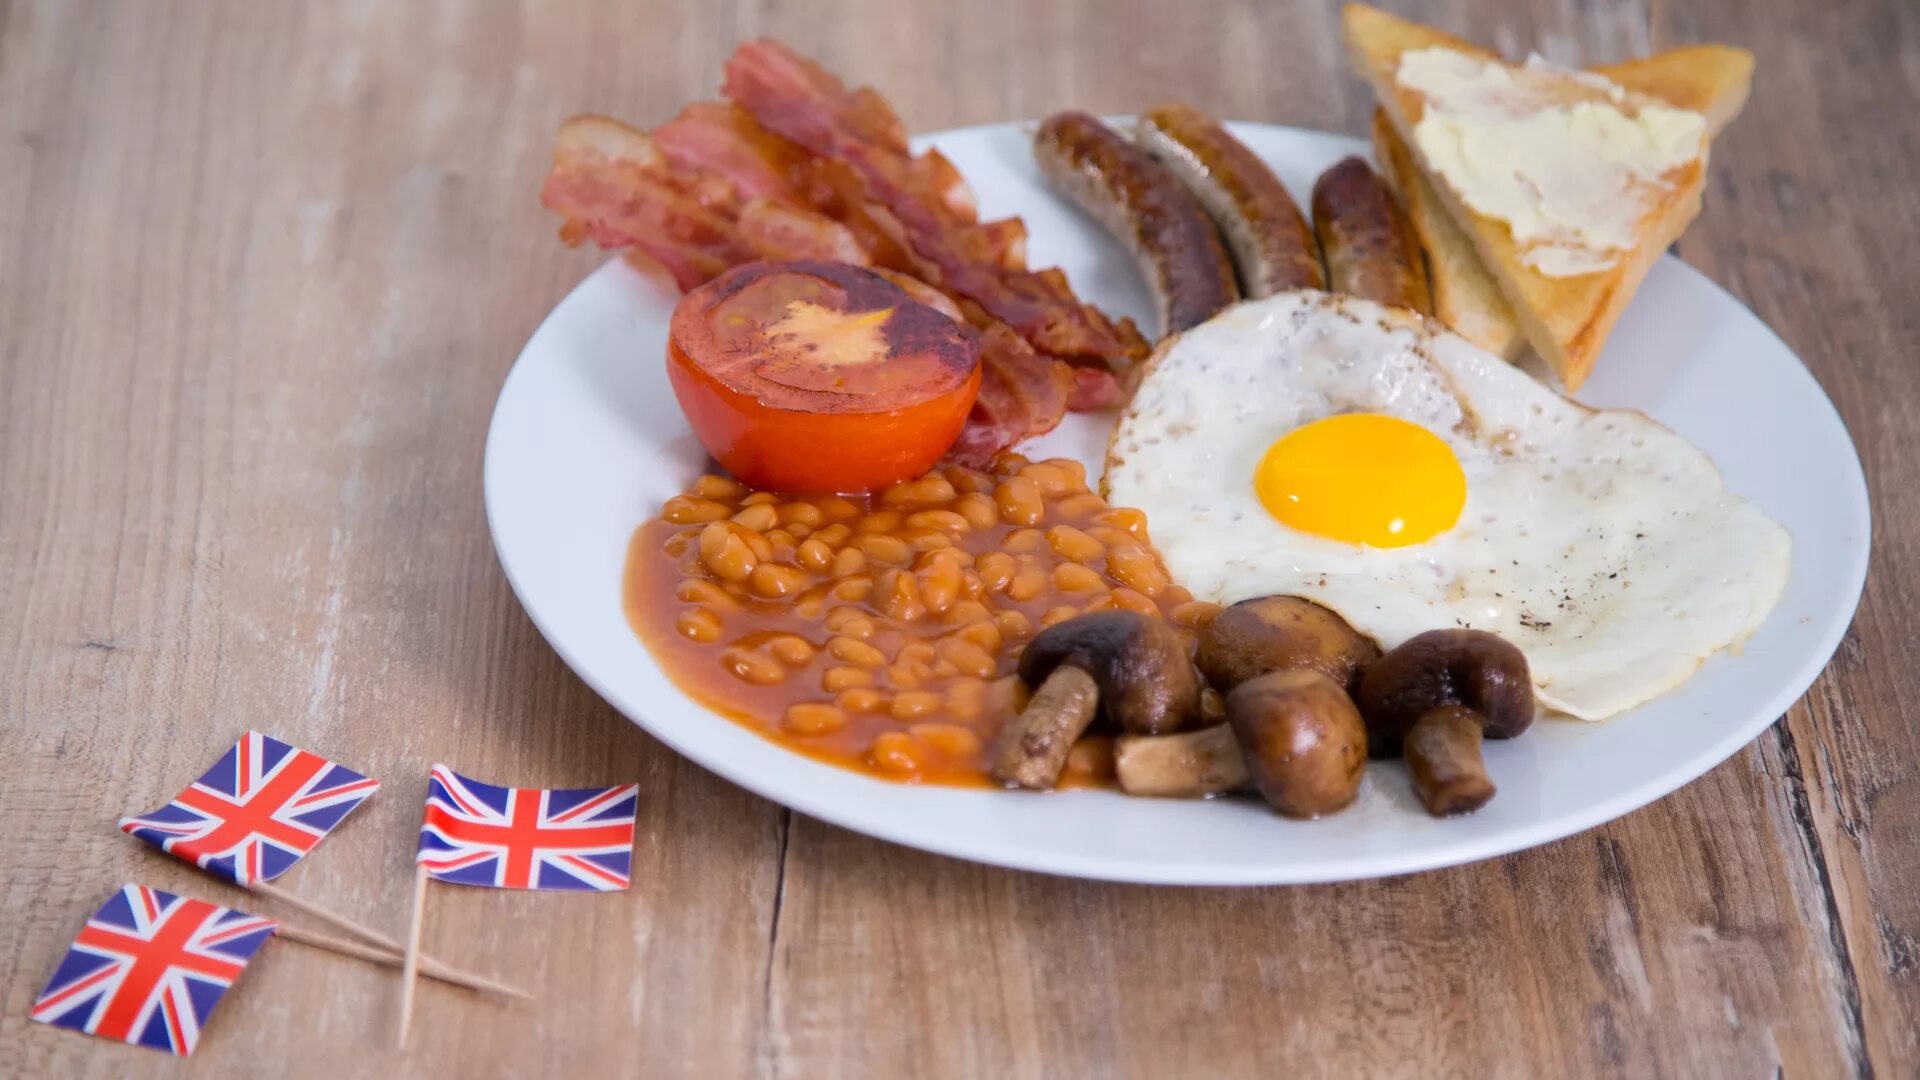 Традиционная английская кухня. Английский завтрак Британия. Завтрак великобританцев. Завтрак Эдвардианская эпоха Англия. Бритиш Брекфаст.